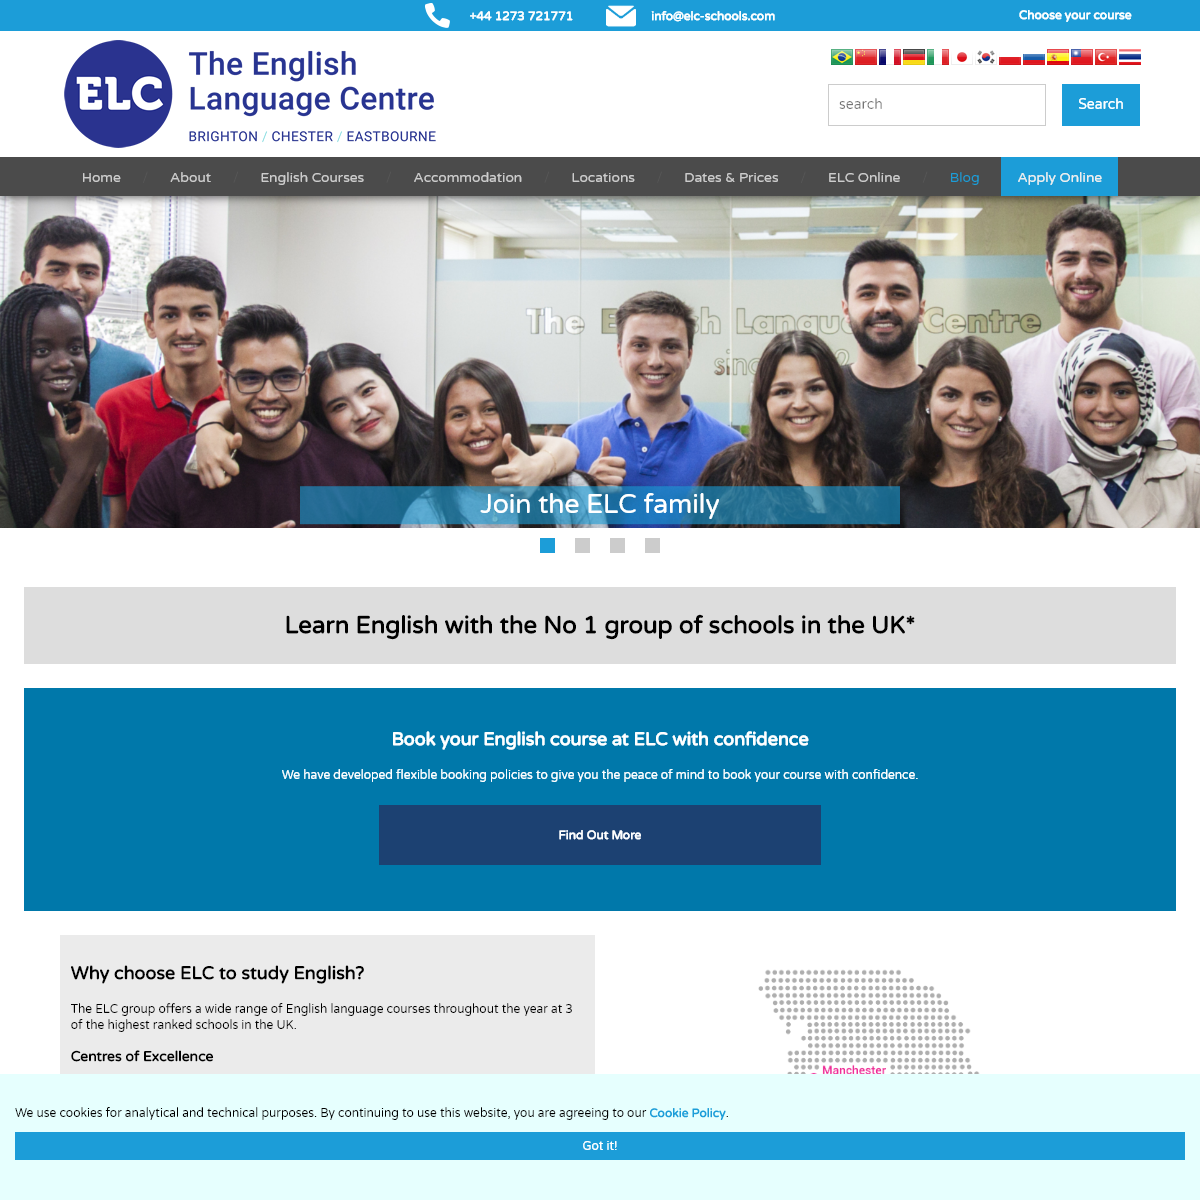 A complete backup of elc-schools.com